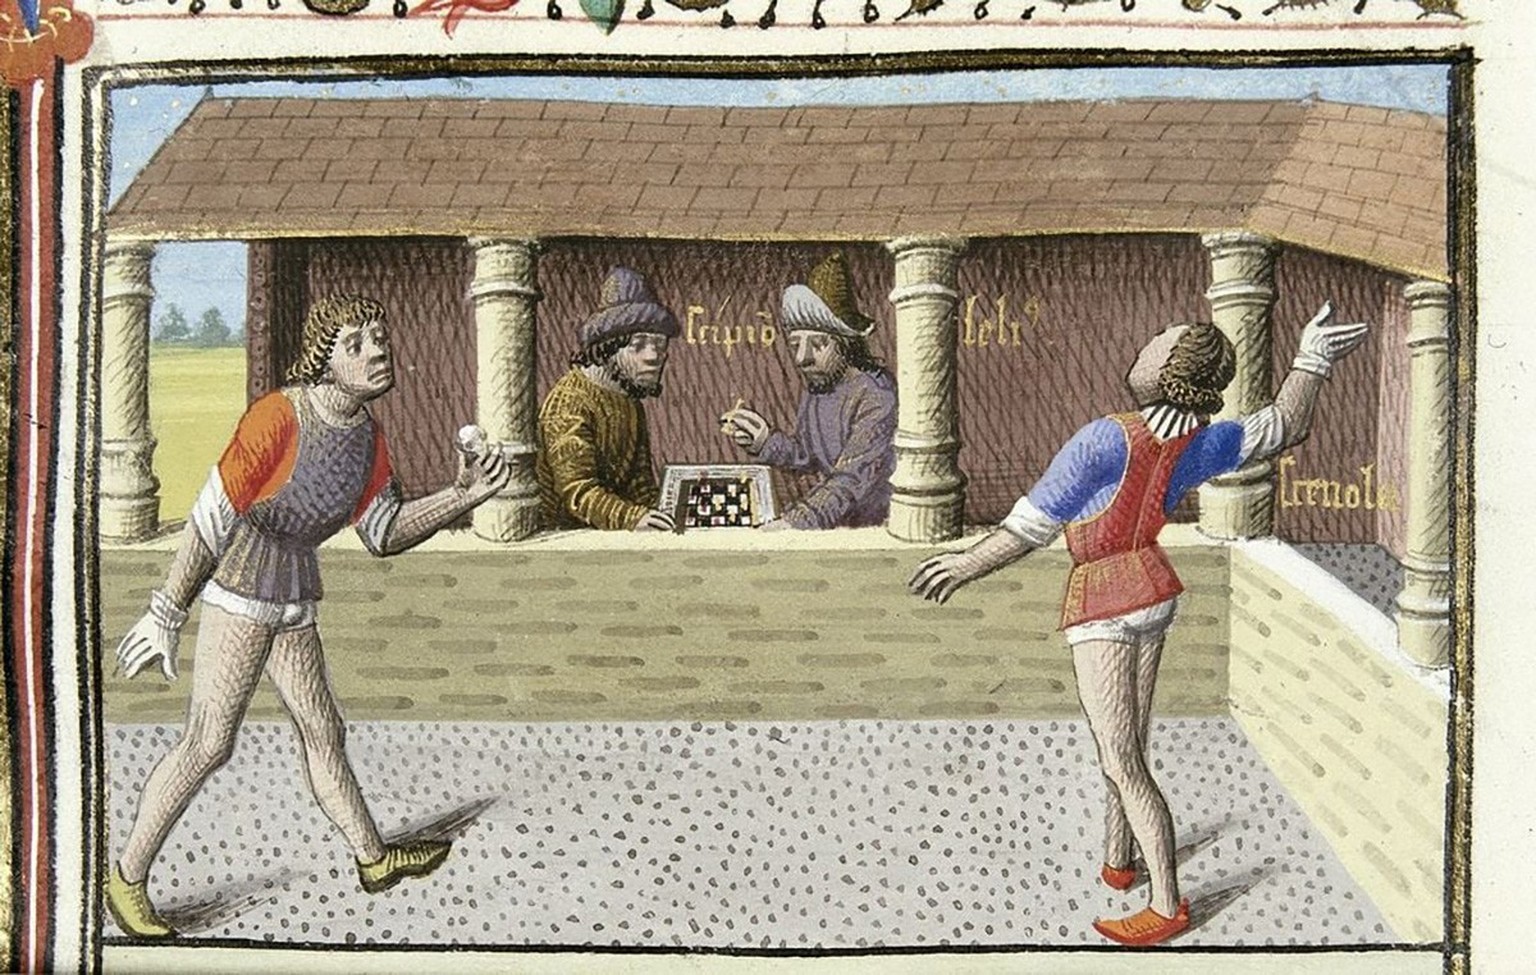 Darstellung eines mittelalterlichen Ballspiels in einer französischen Handschrift aus dem 14. Jahrhundert. Im Hintergrund wird Schach gespielt.
https://commons.wikimedia.org/wiki/File:Medieval_Tennis. ...